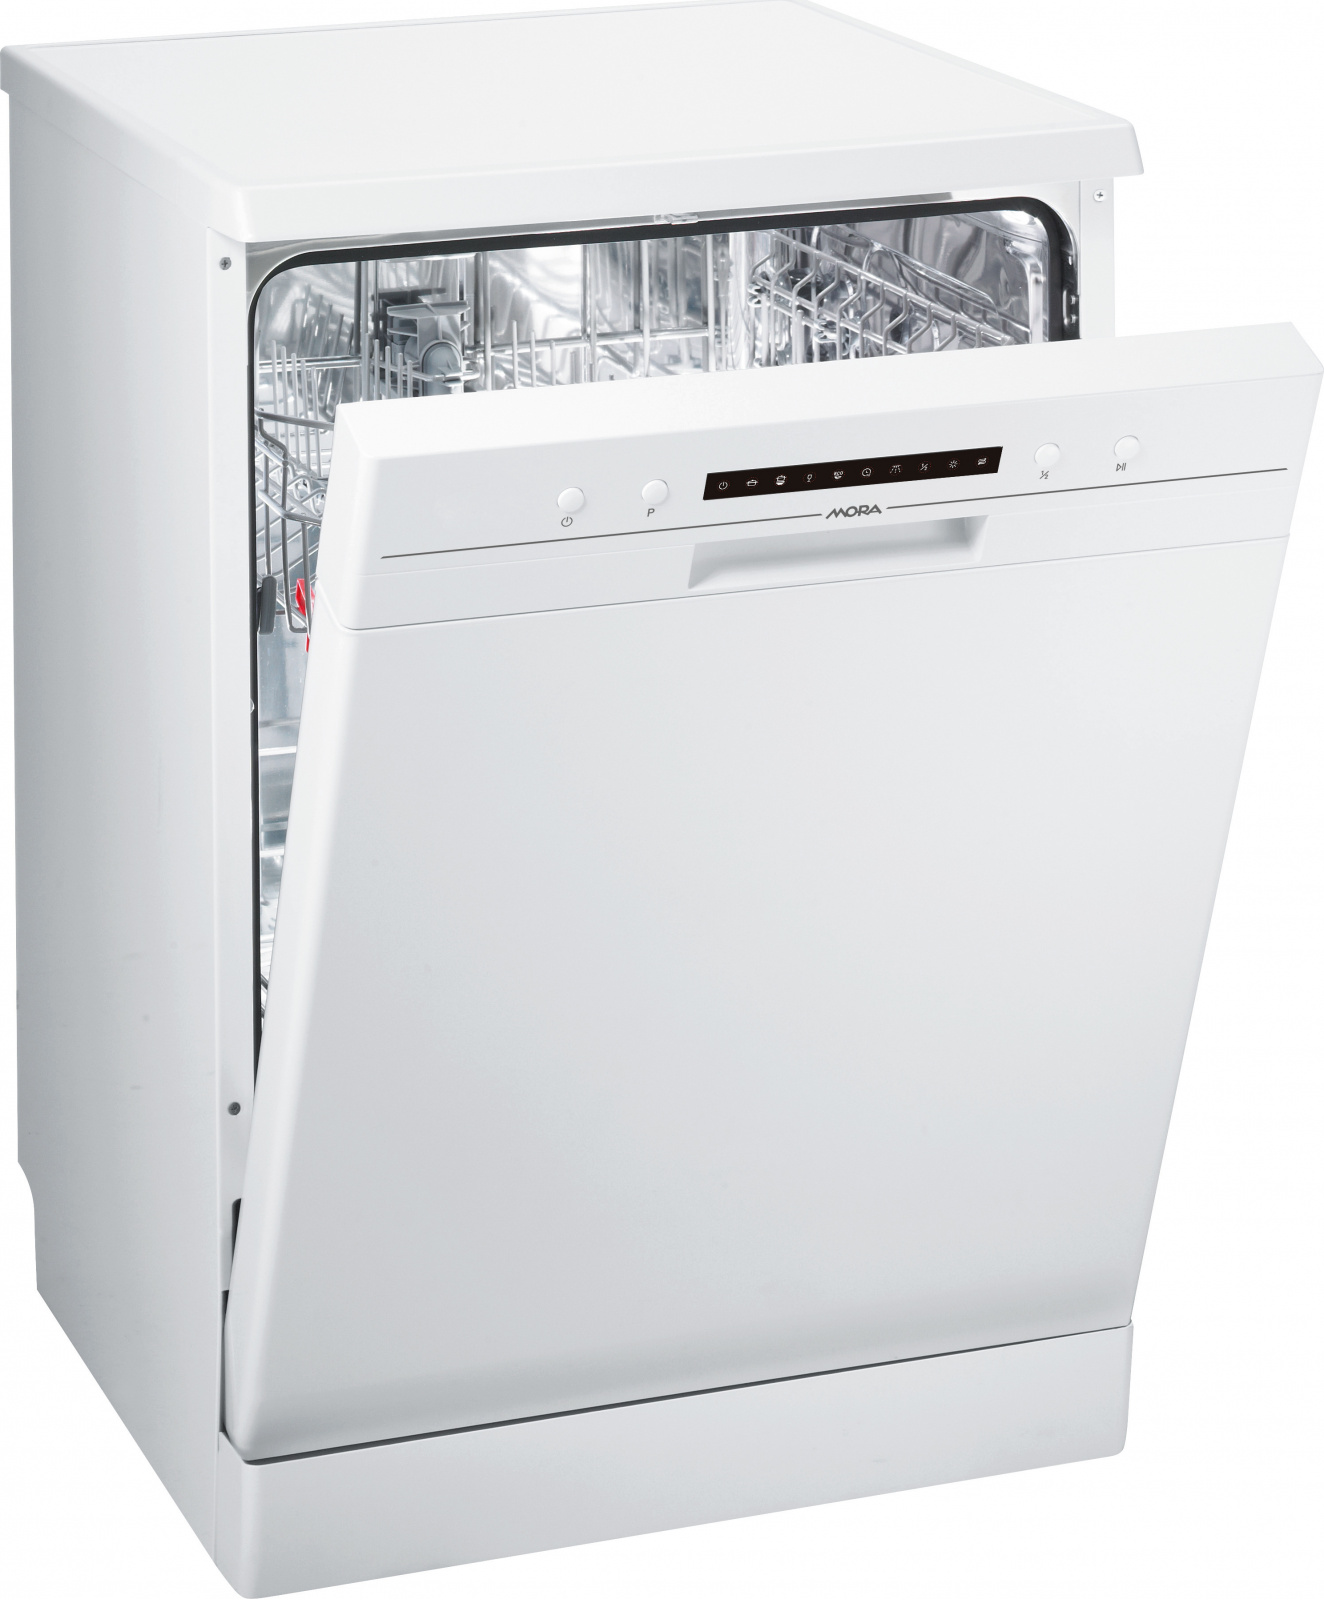 Посудомоечная машина горенье отдельностоящая. Посудомоечная машина Gorenje gs52214w. Посудомоечная машина Gorenje gs52010w. Посудомоечная машина Горенье 45 см отдельностоящая.